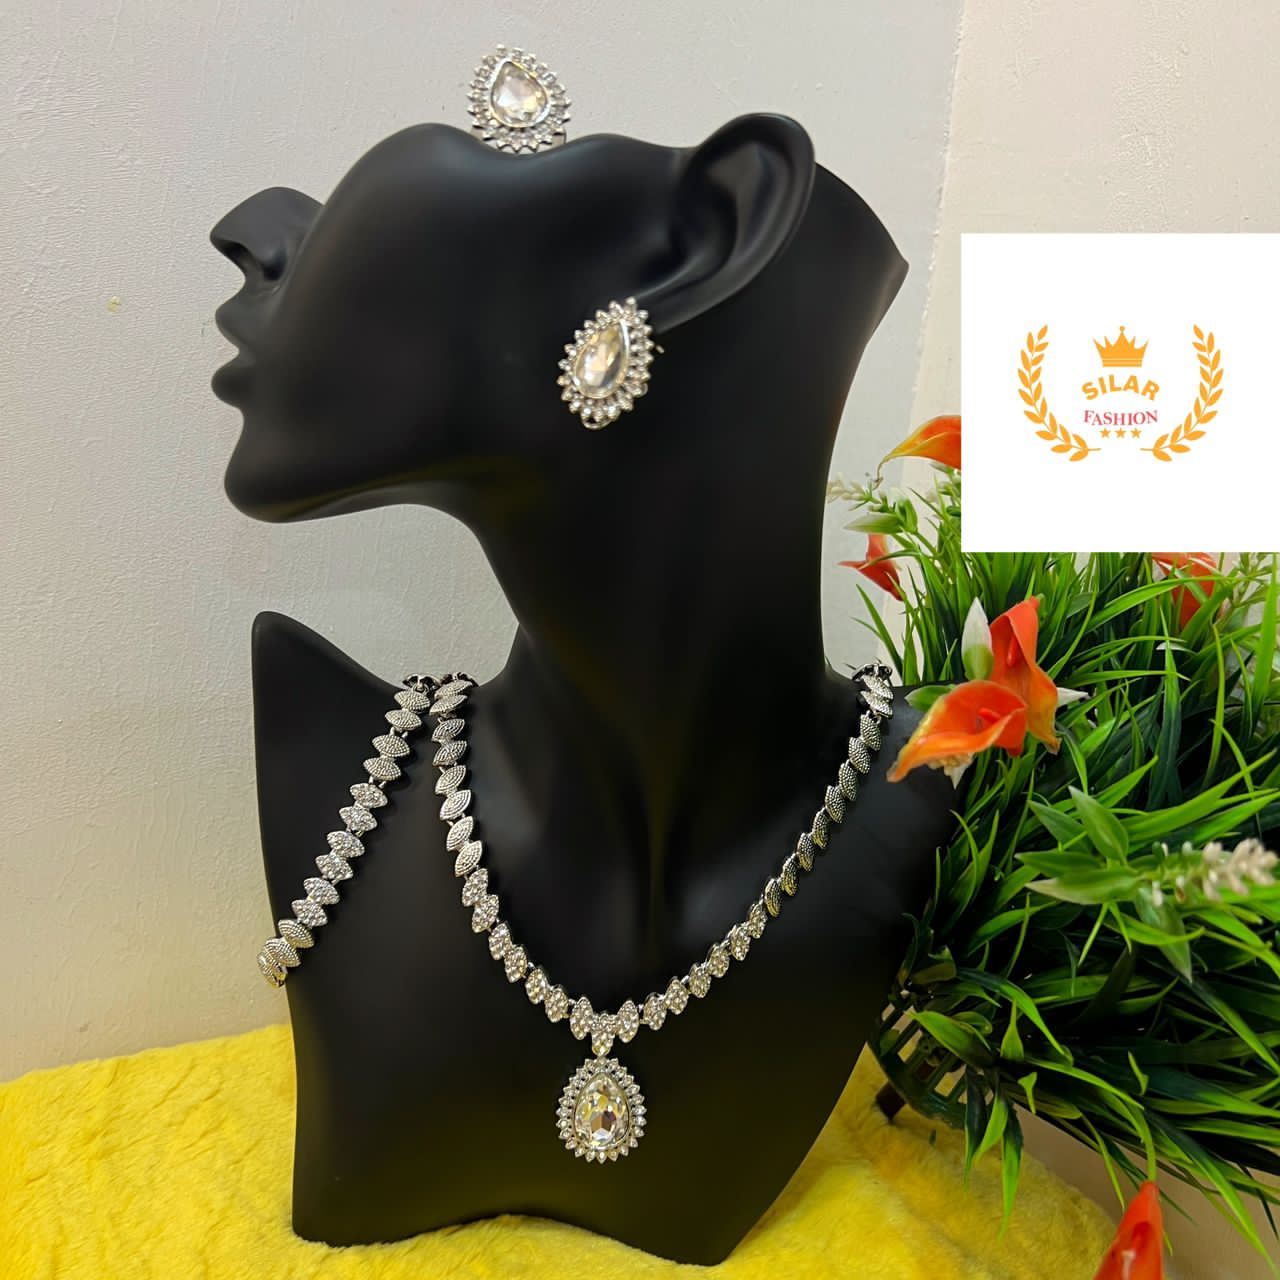 Hazel necklace set (necklace, bracelet, ring, earrings)